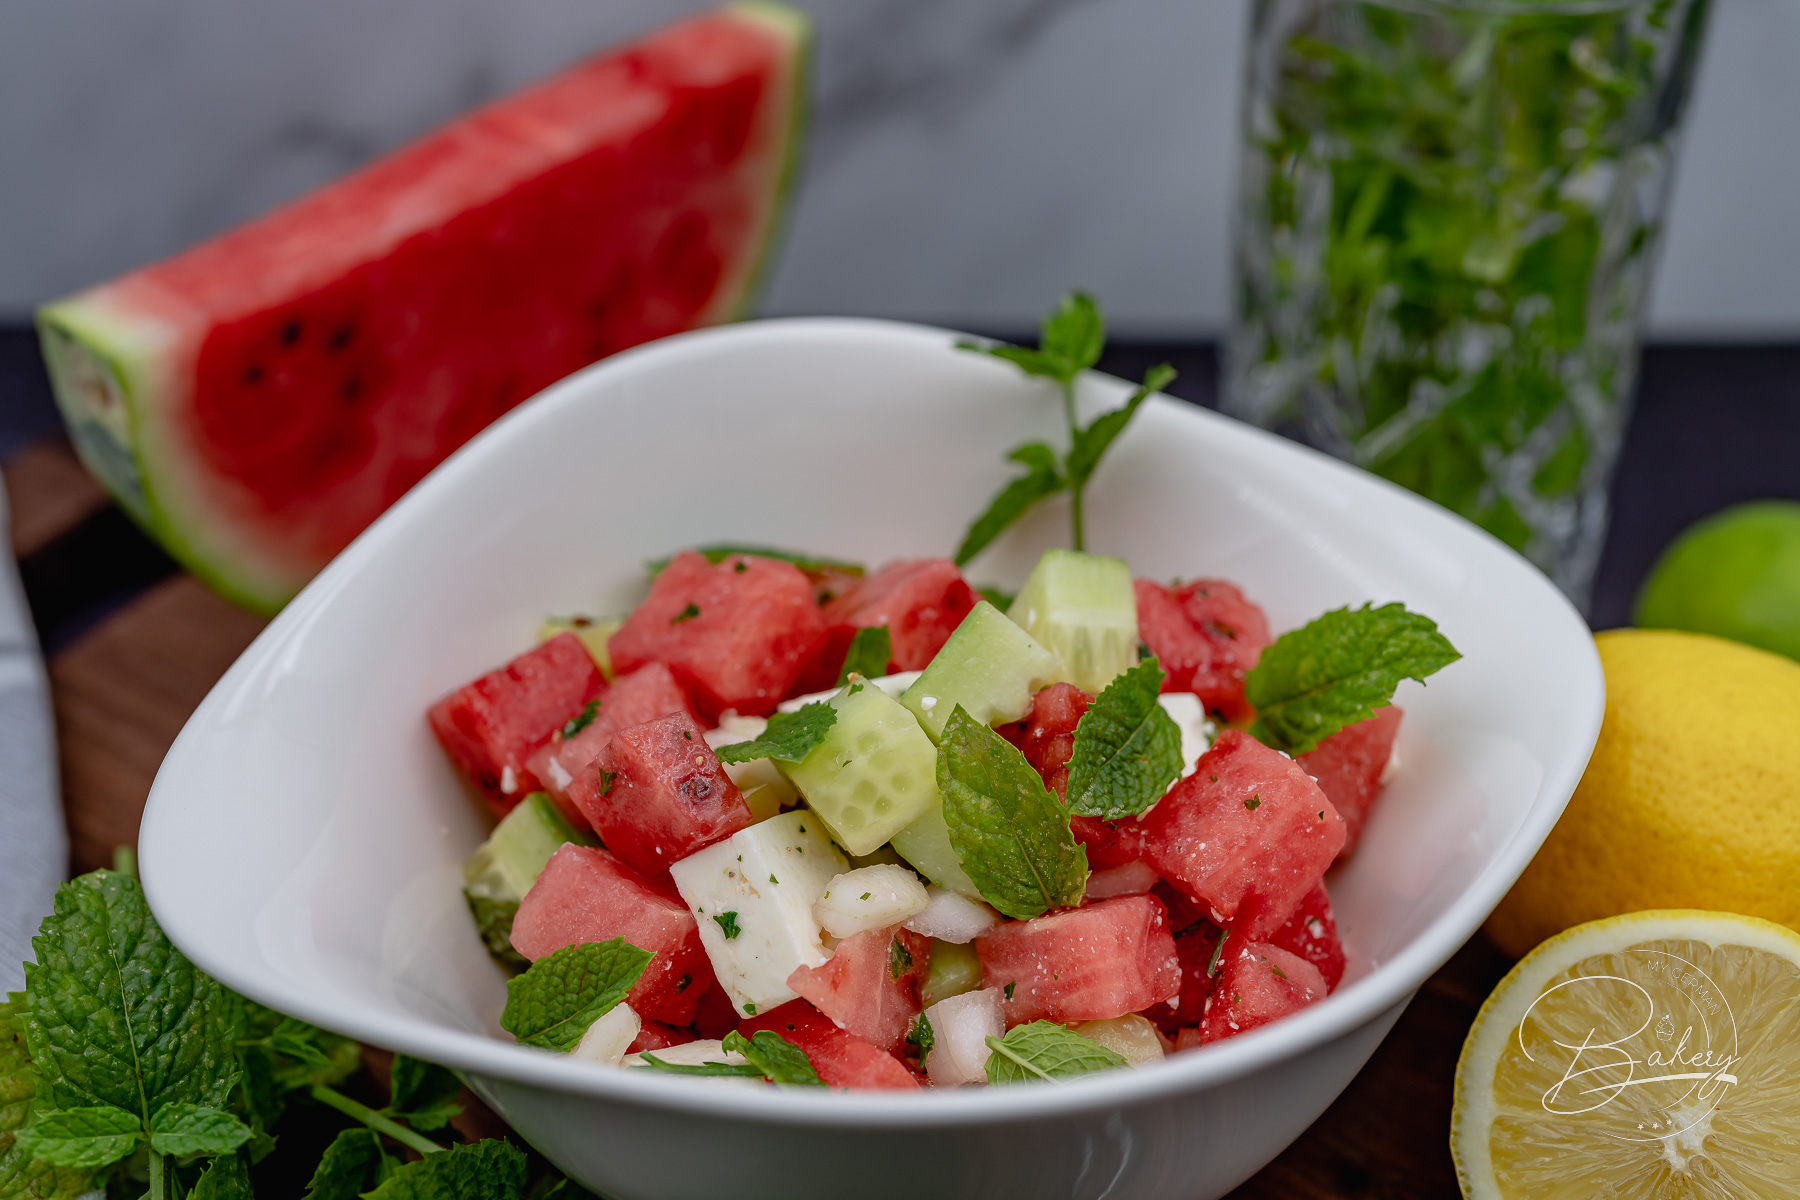 Sommersalat mit Wassermelone Rezept - Leichter Fitness Salat mit Feta - Fitness-Salat - Gesunder Salat mit Wassermelone, Gurke, Feta und frischer Minze - erfrischend und einfach